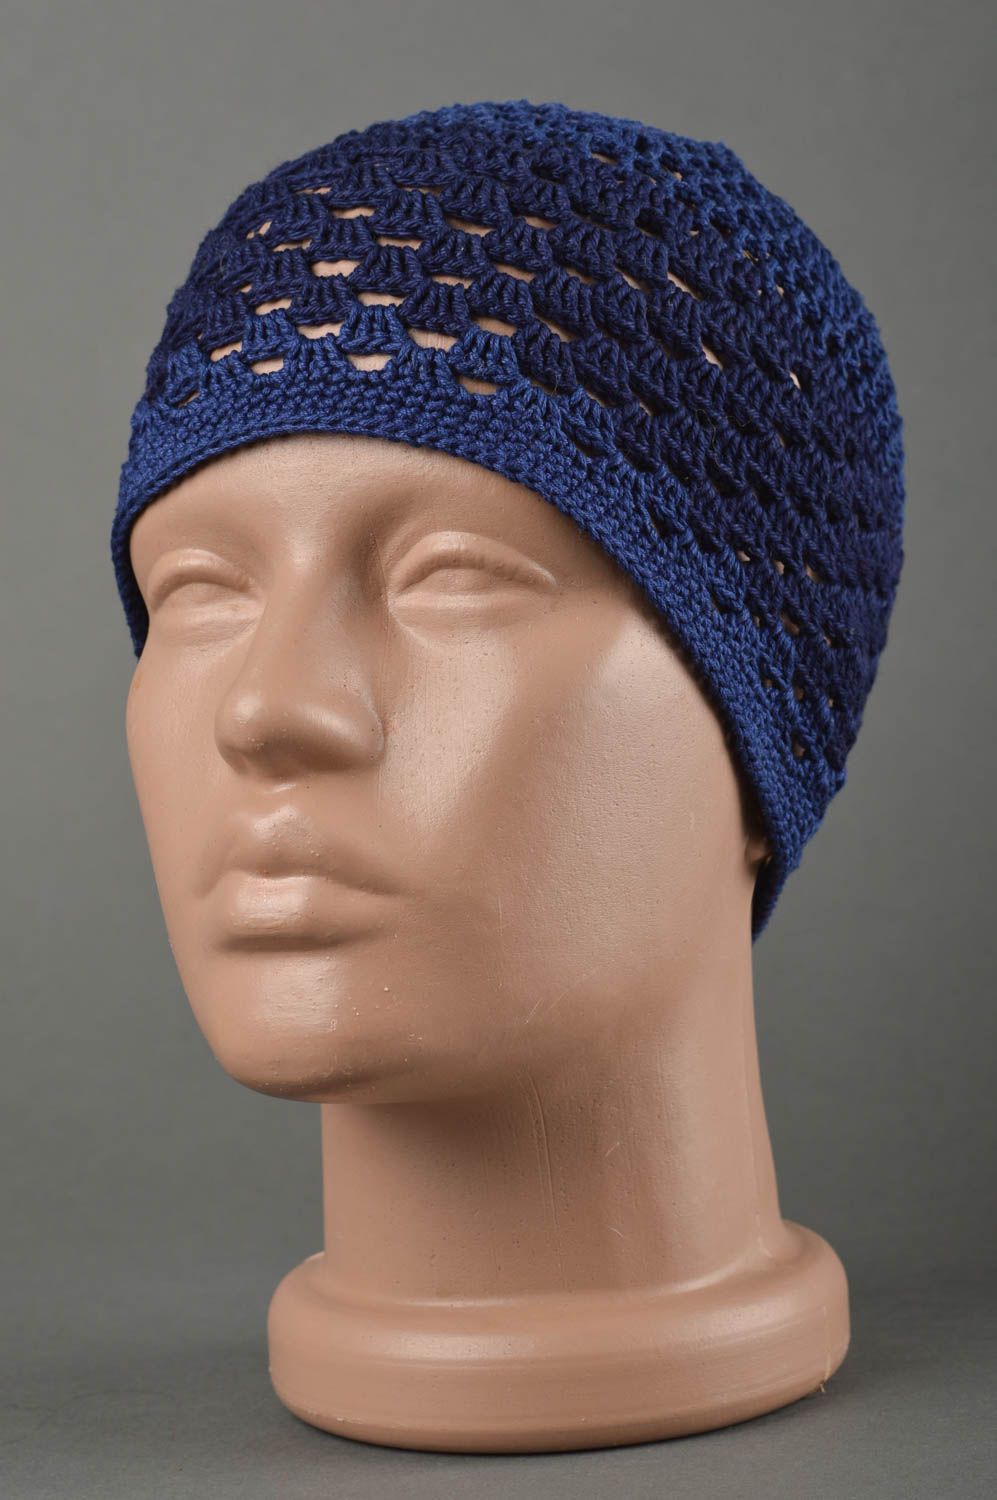 Blaue gehäkelte Kindermütze handgemachte Mütze modisches Accessoire für Frühling foto 1